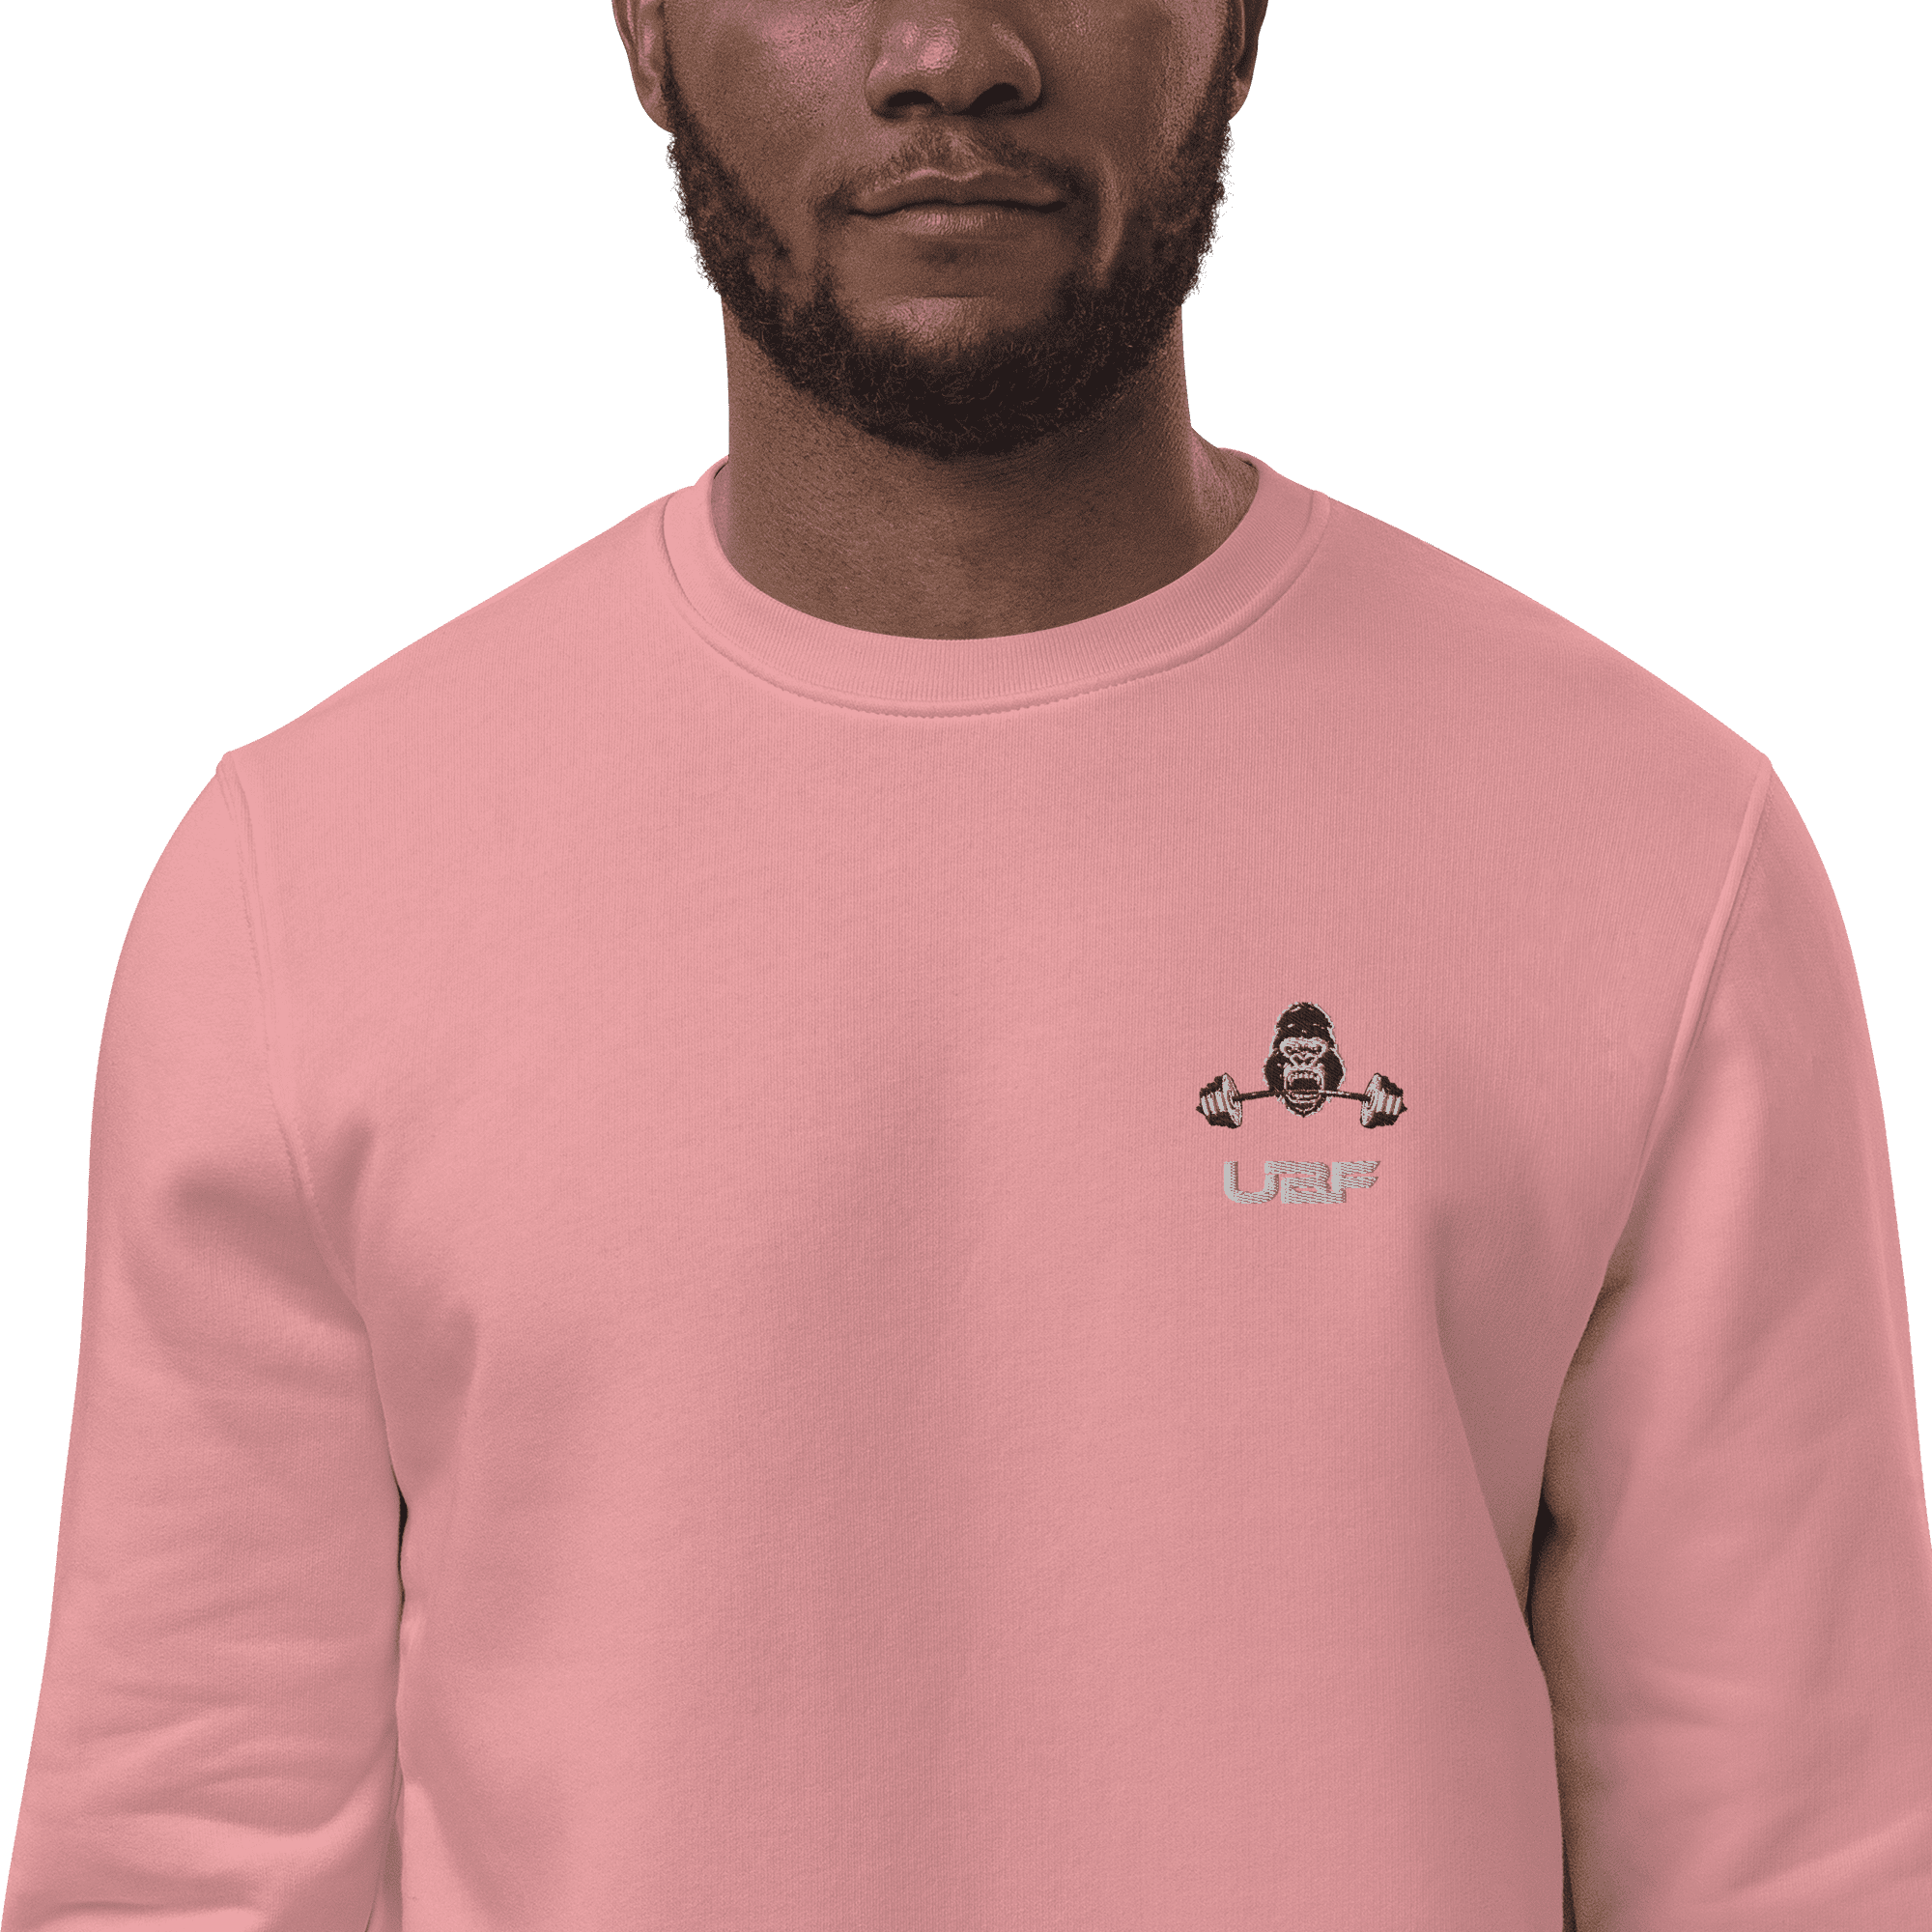 Men's eco sweatshirt